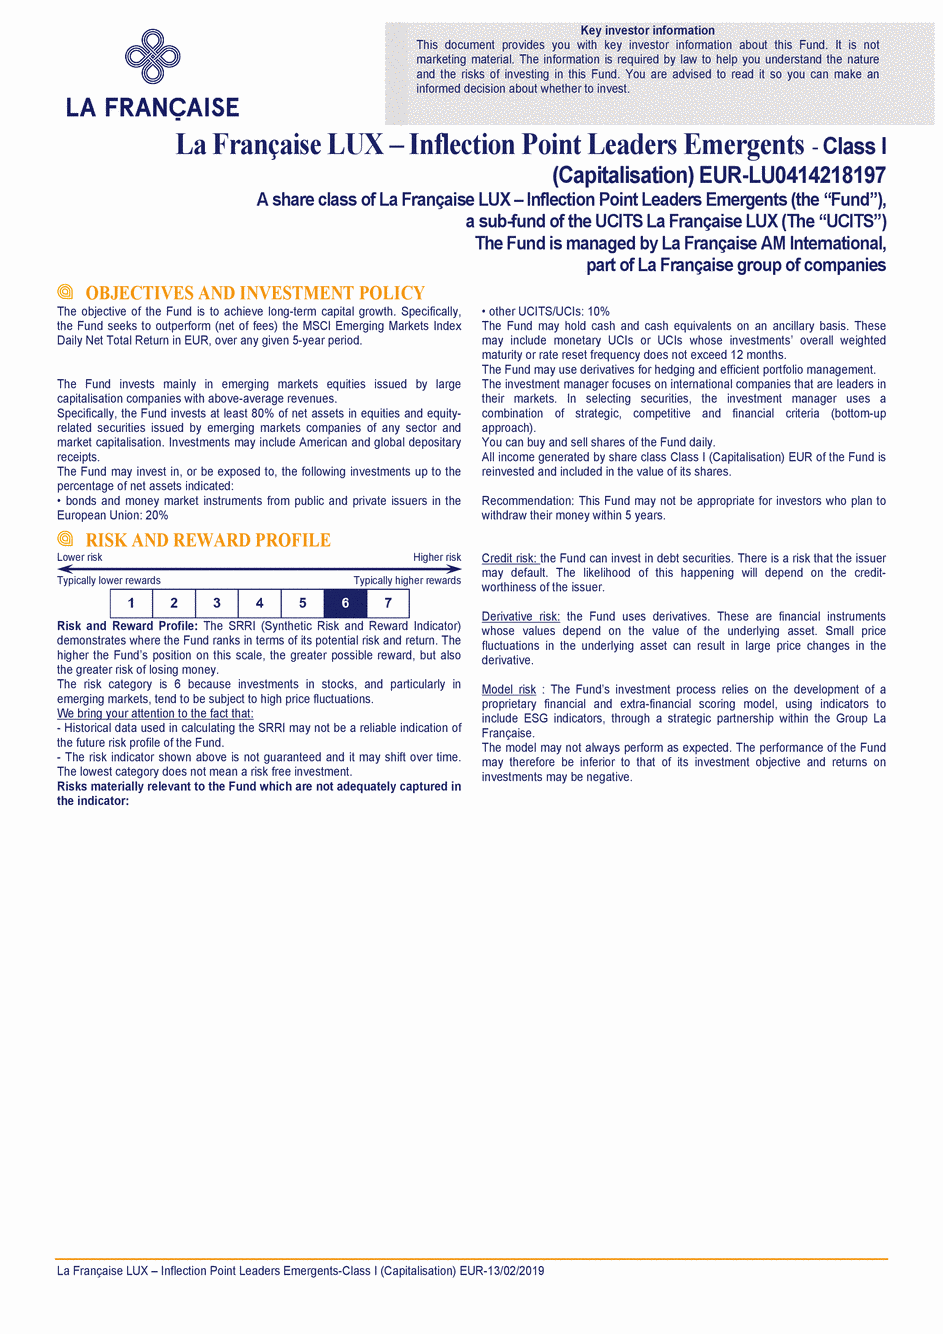 DICI La Française LUX - Inflection Point Leaders Emergents - I (C) EUR - 13/02/2019 - Anglais